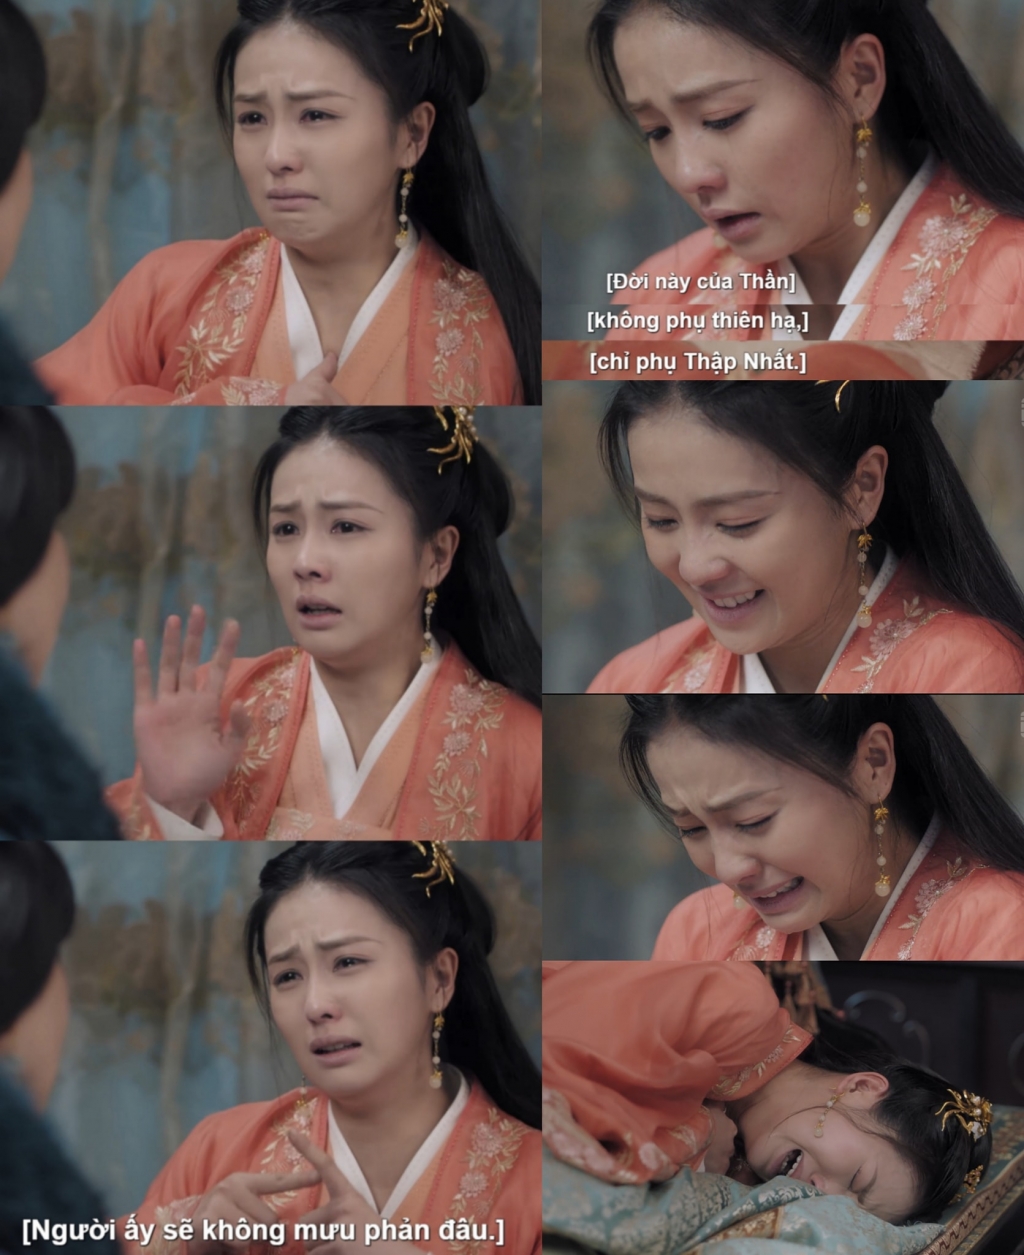 Châu Sinh Như Cố là bộ phim giúp nữ diễn viên sinh năm 1994 tỏa sáng khi thể hiện thành công những phân cảnh khóc đau xé lòng của nhân vật Thời Nghi.